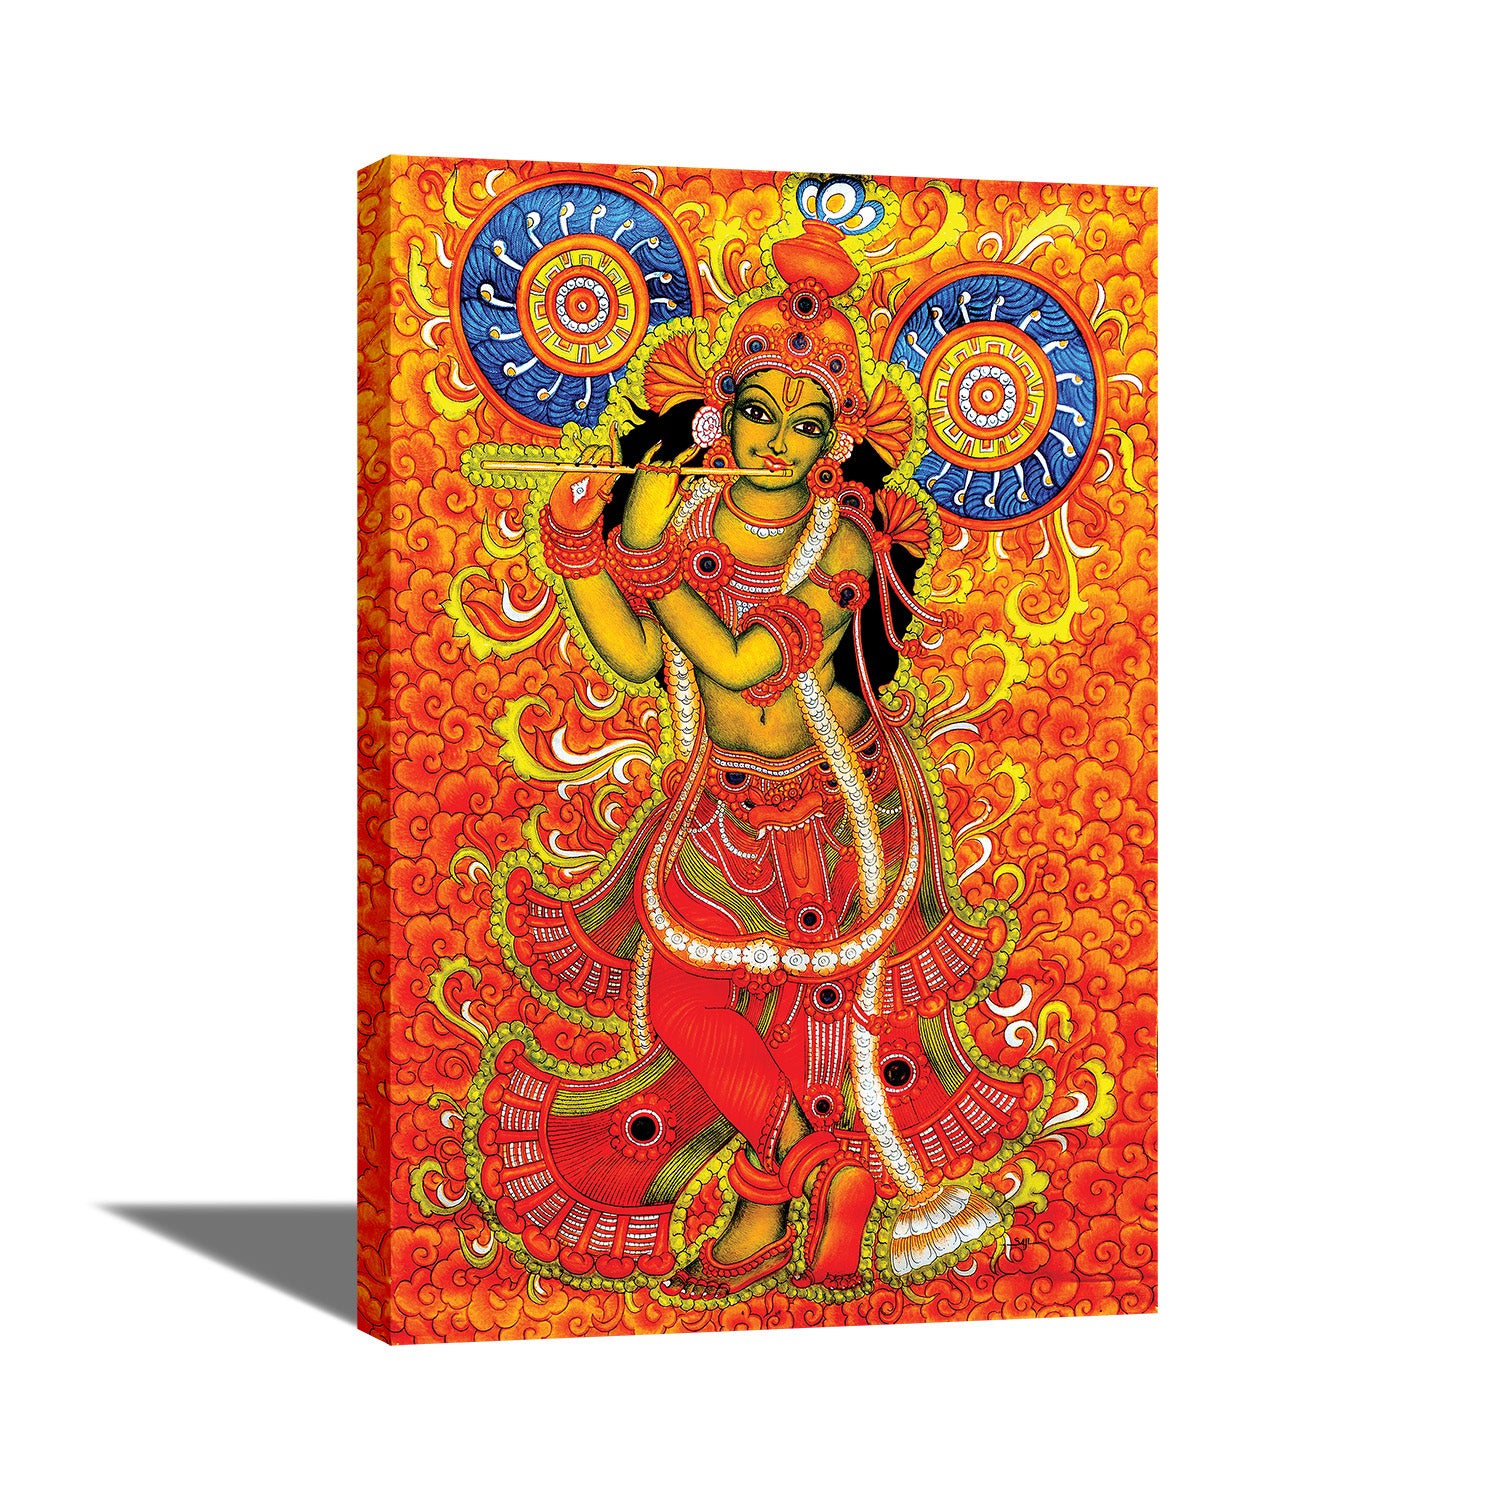 Jai Sri Krishna - Canvas Painting - Framed